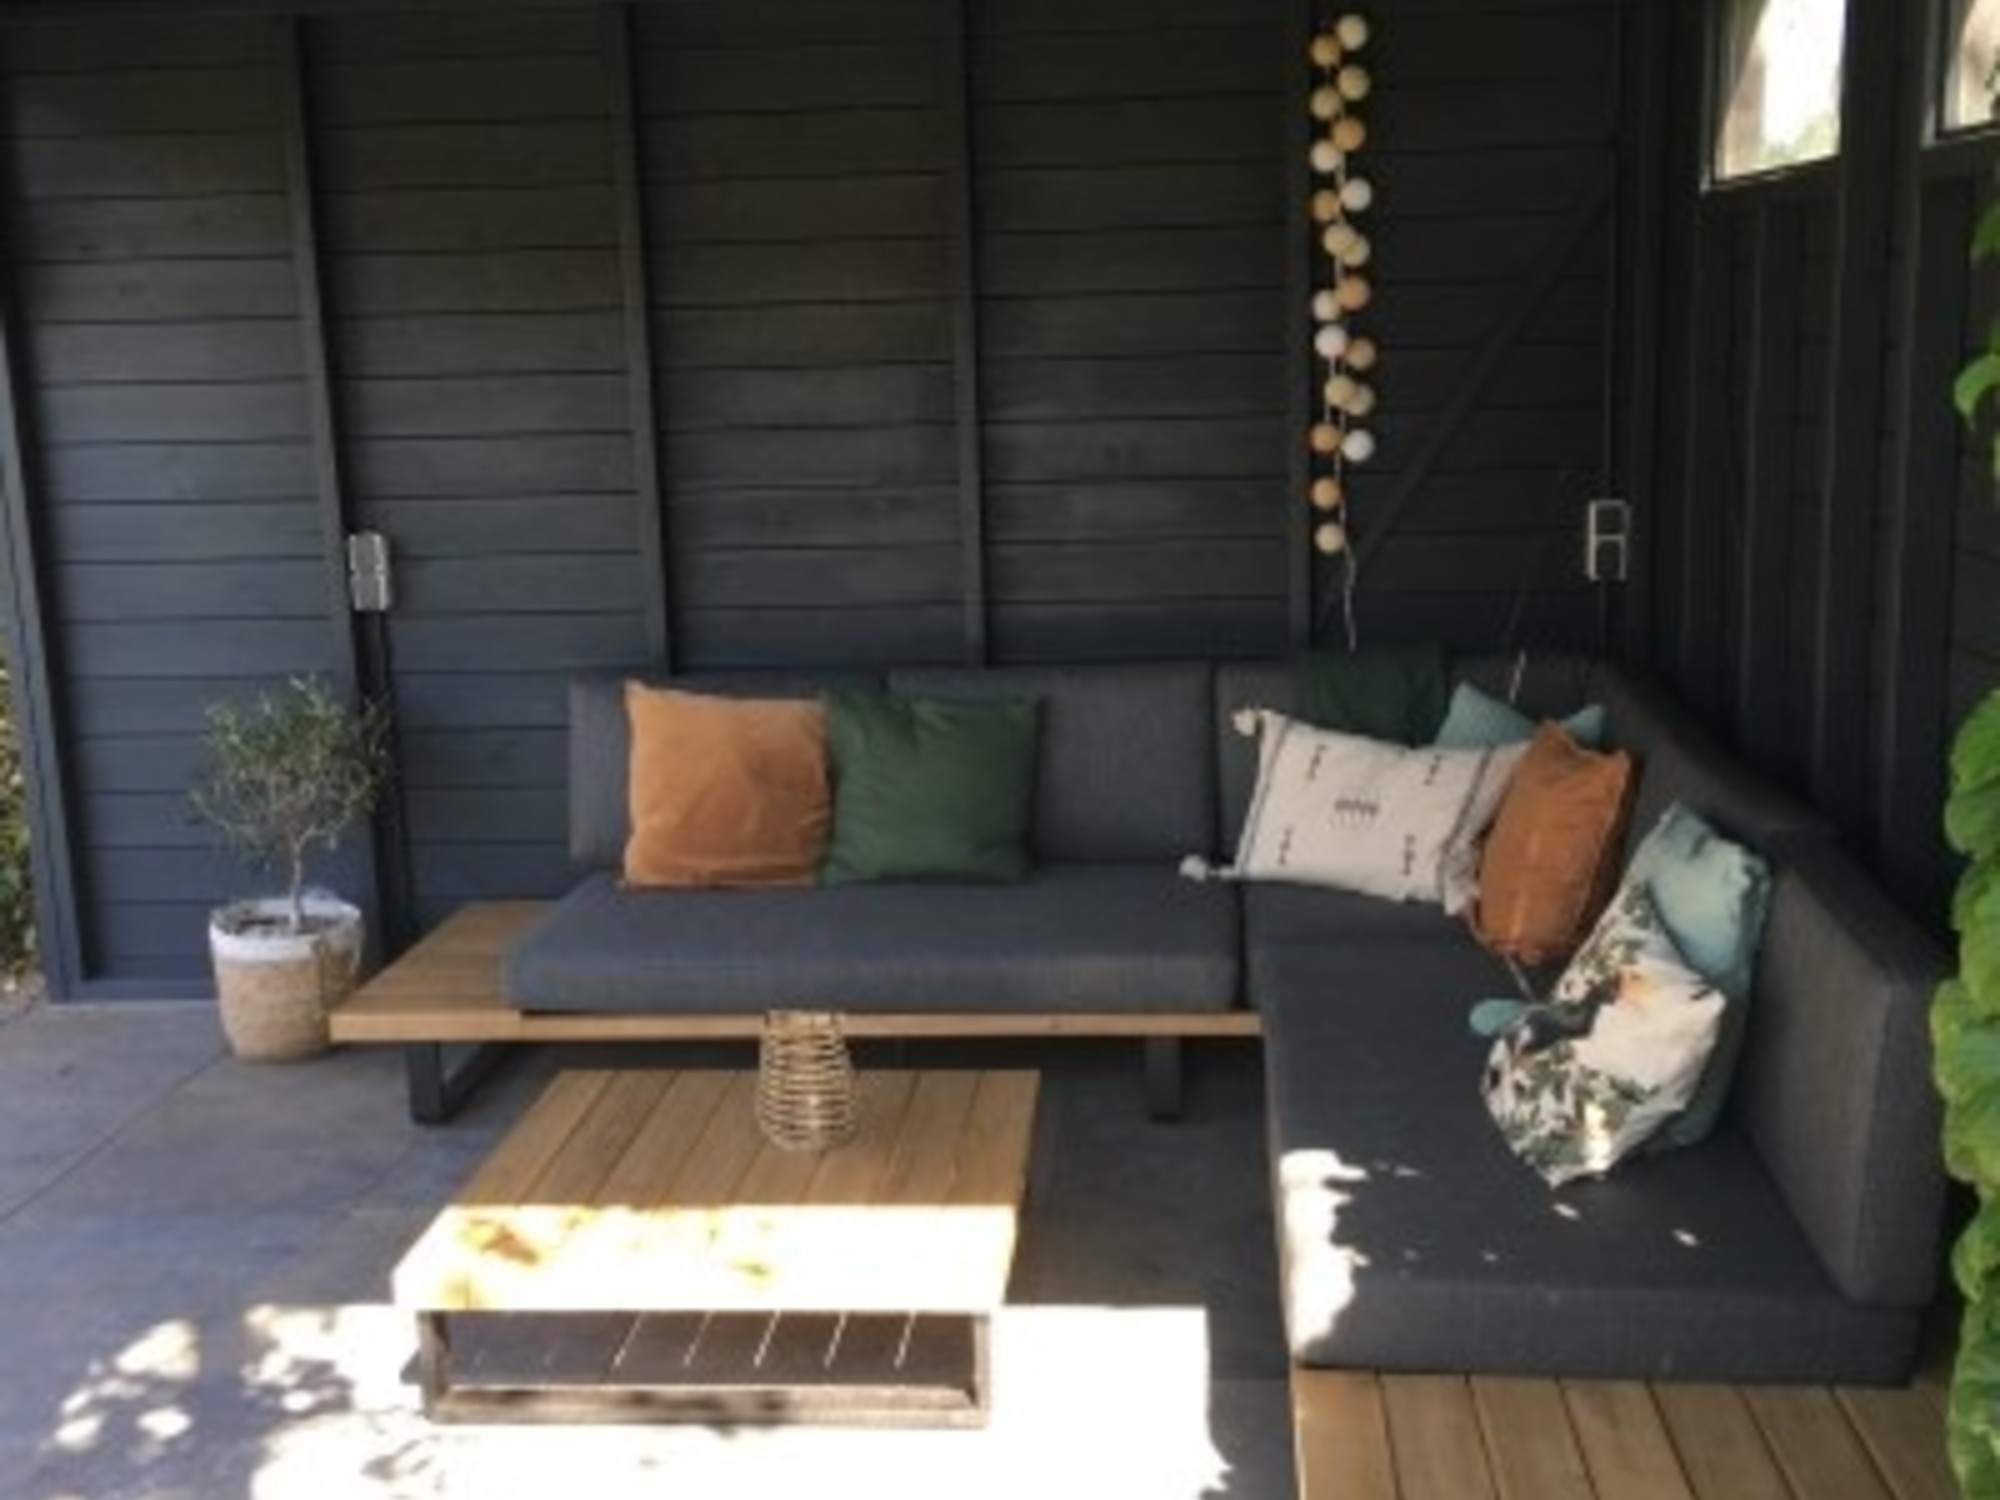 Draaien Tektonisch Onbemand Een mooie loungeset kopen voor in je tuin - AVH Outdoor Tuinmeubelen